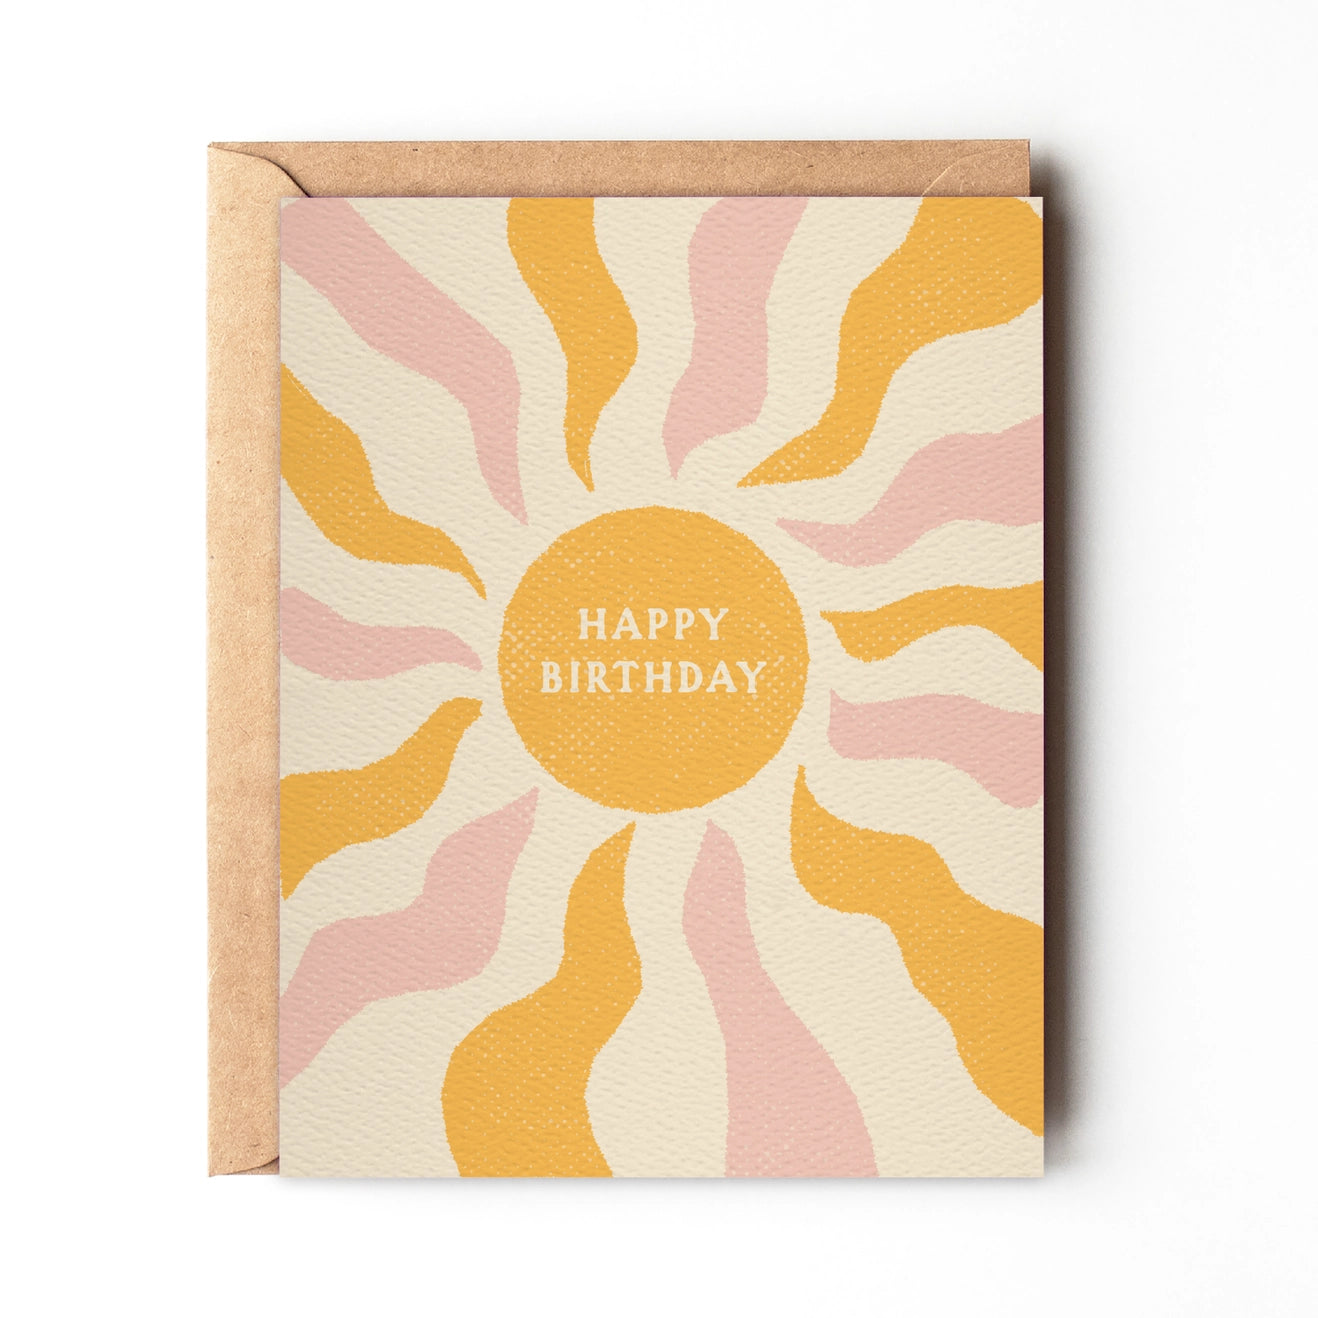 Happy Birthday Sun - Greeting Card